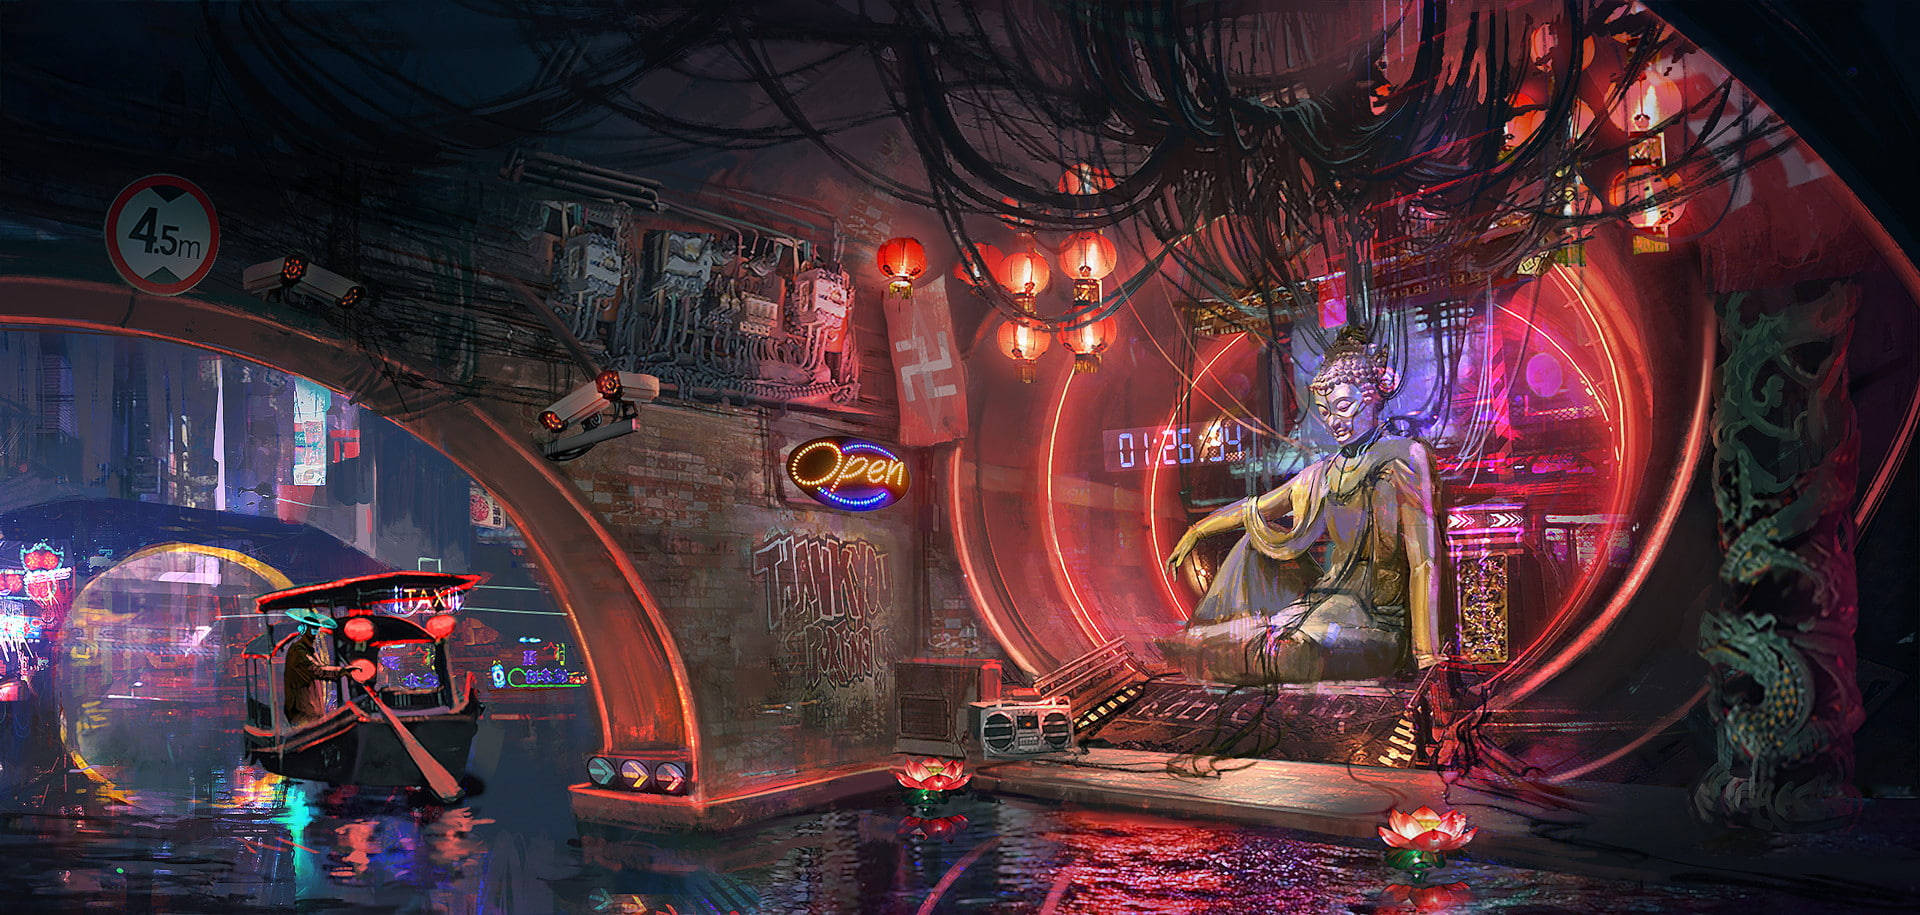 Techno Buddha Cyberpunk 2077 Wallpaper